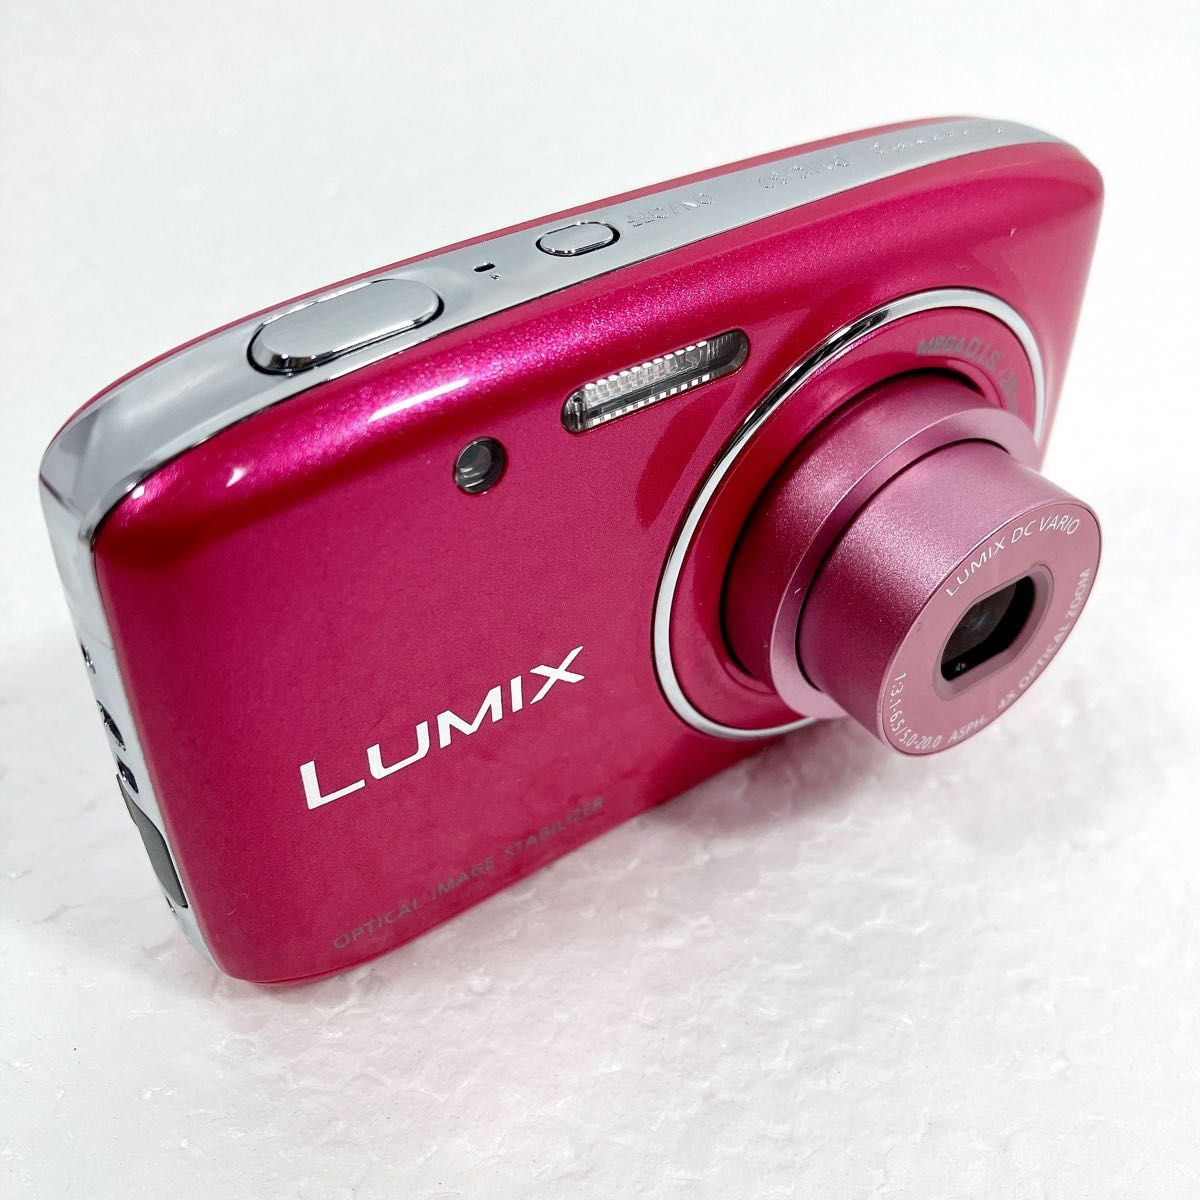 Panasonic パナソニック デジタルカメラ ルミックス S2 光学4倍 ピンク DMC-S2 LUMIX メモリーカード付き